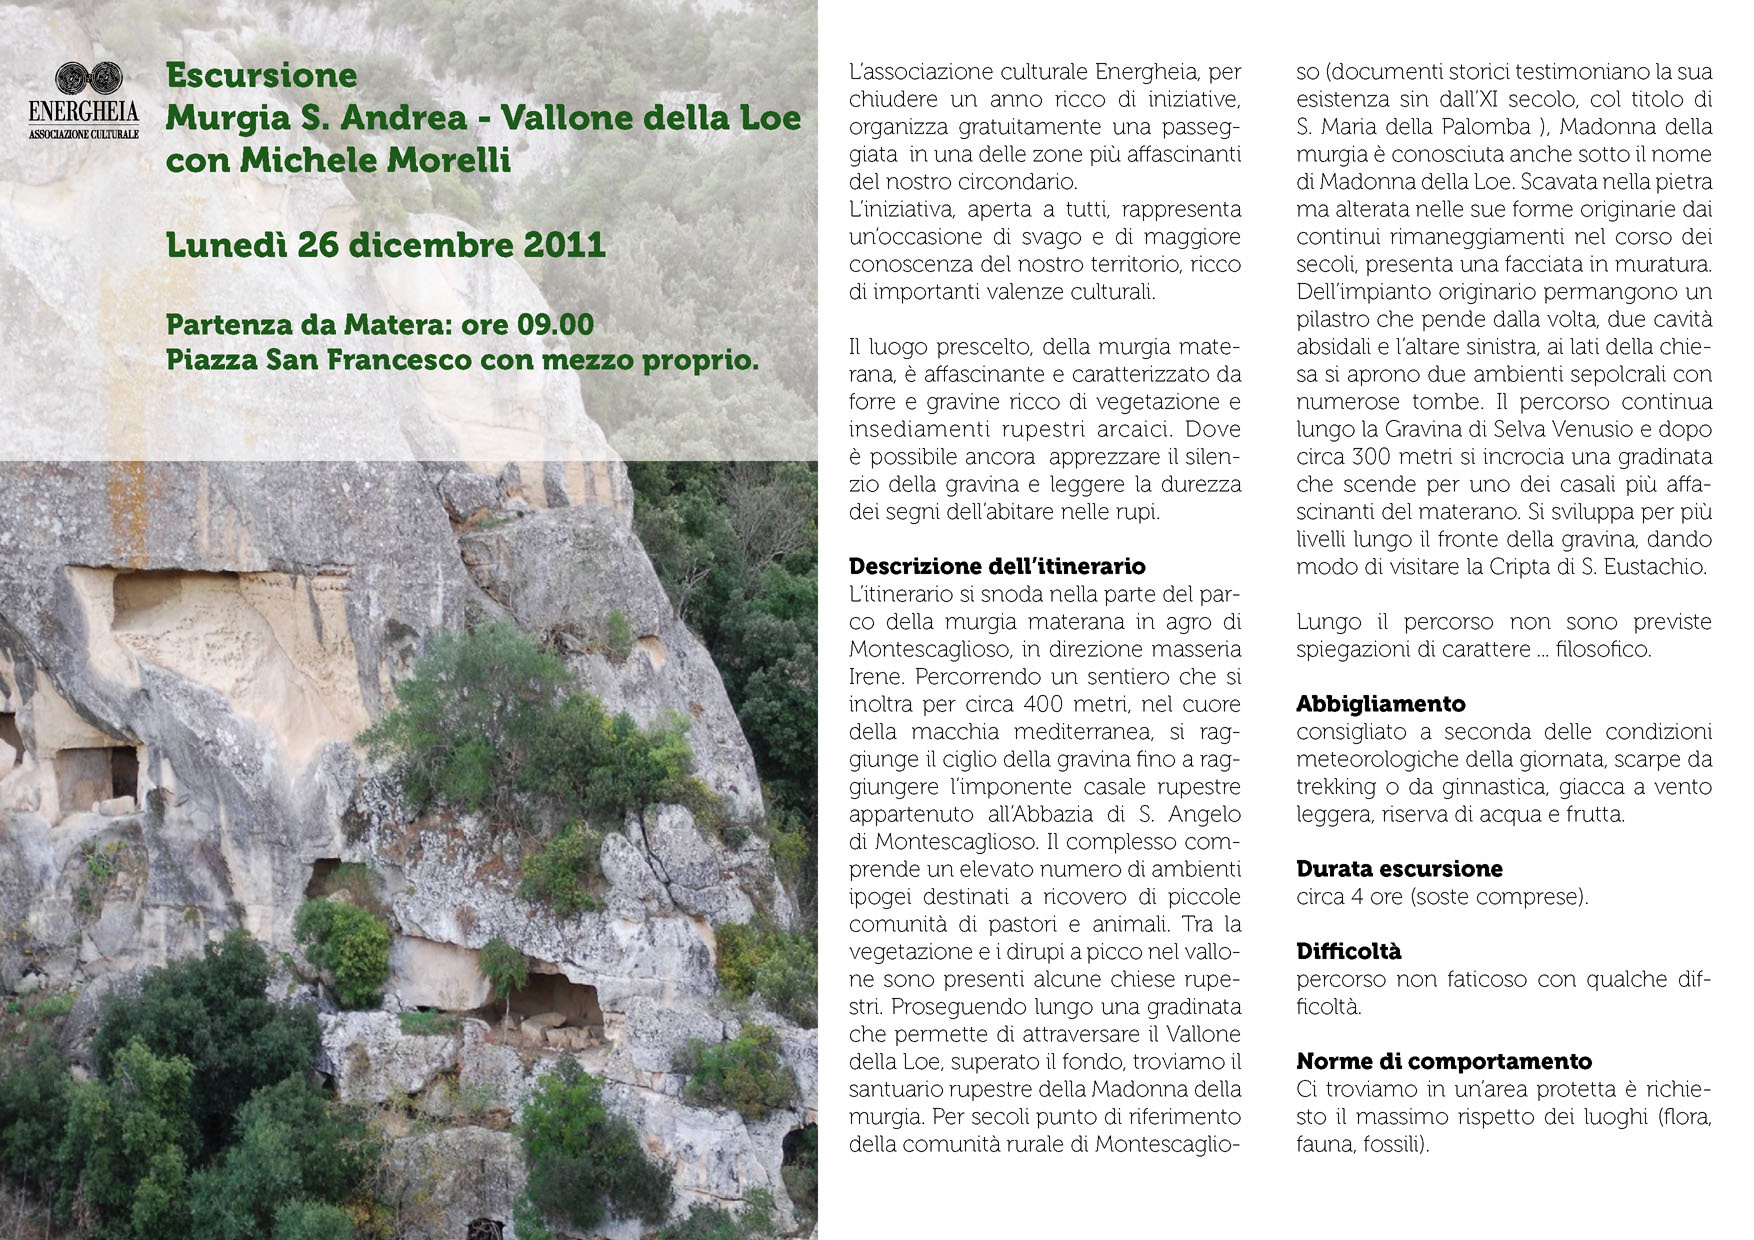 L’invito per l’escursione a Murgia S. Andrea_Vallone della Loe